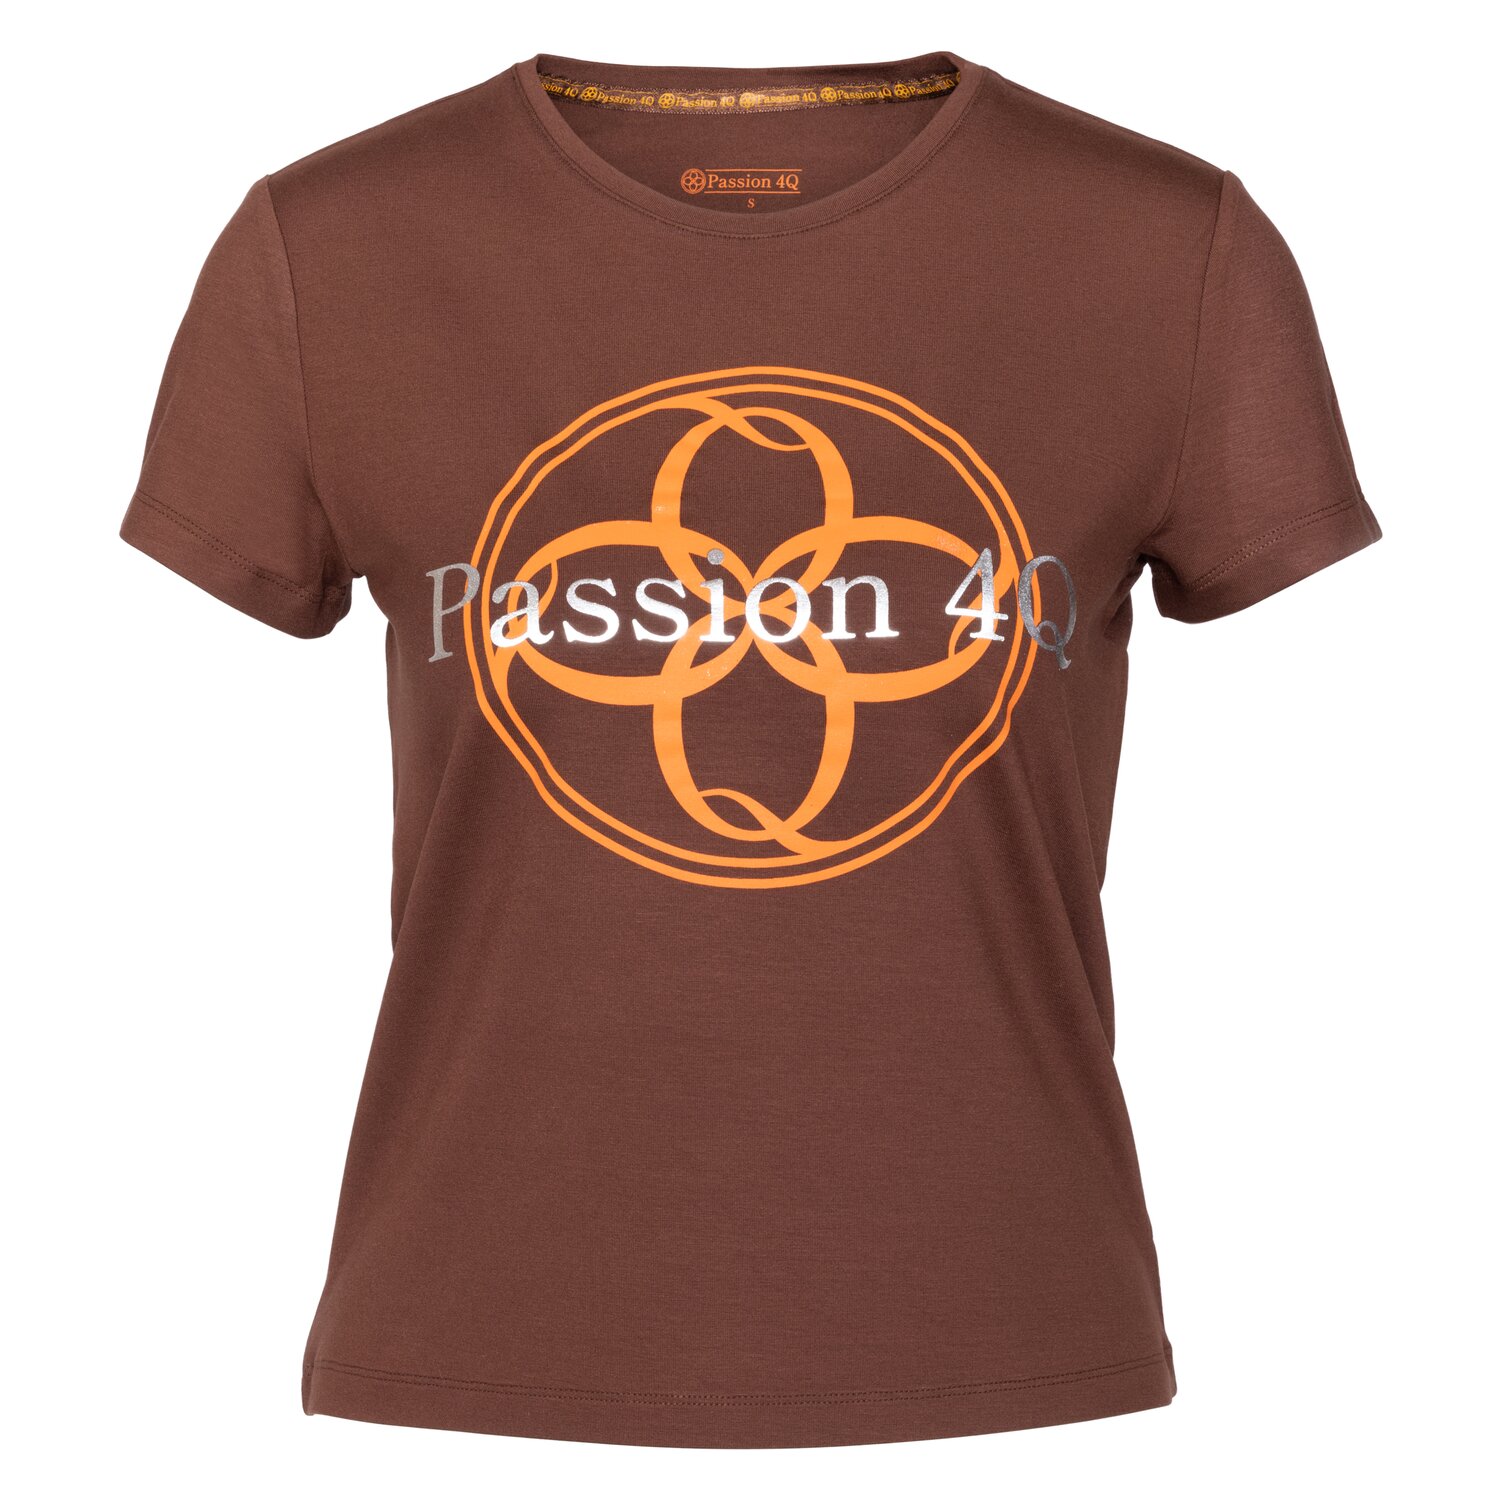 Passion 4Q T-Shirt für Damen 